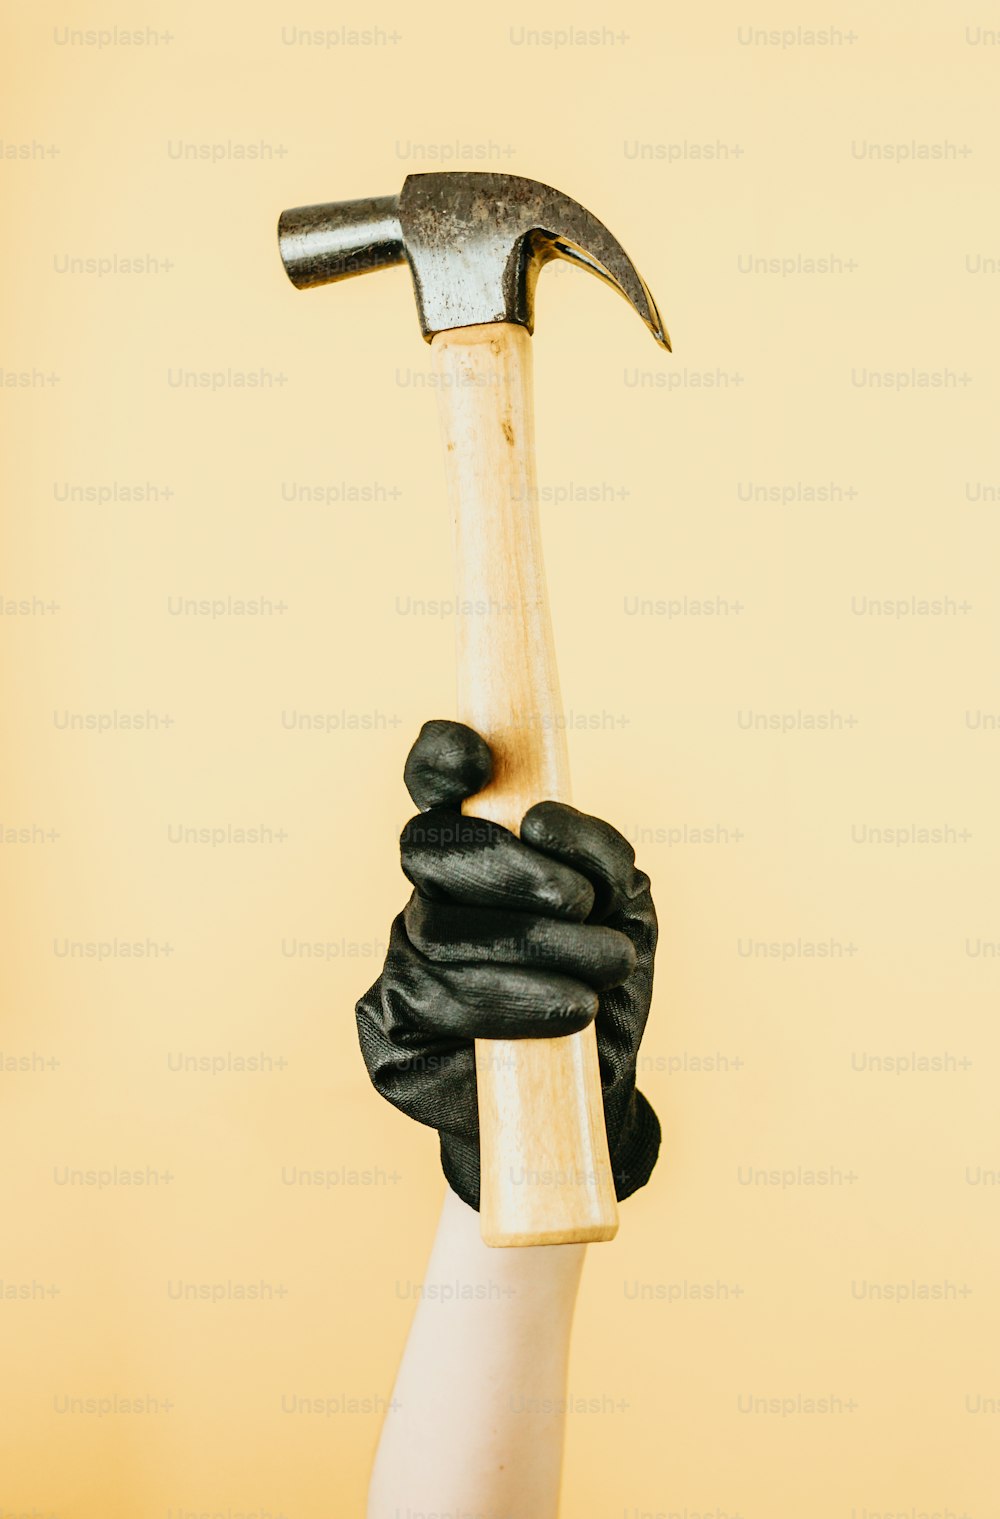 una persona sosteniendo un martillo en la mano